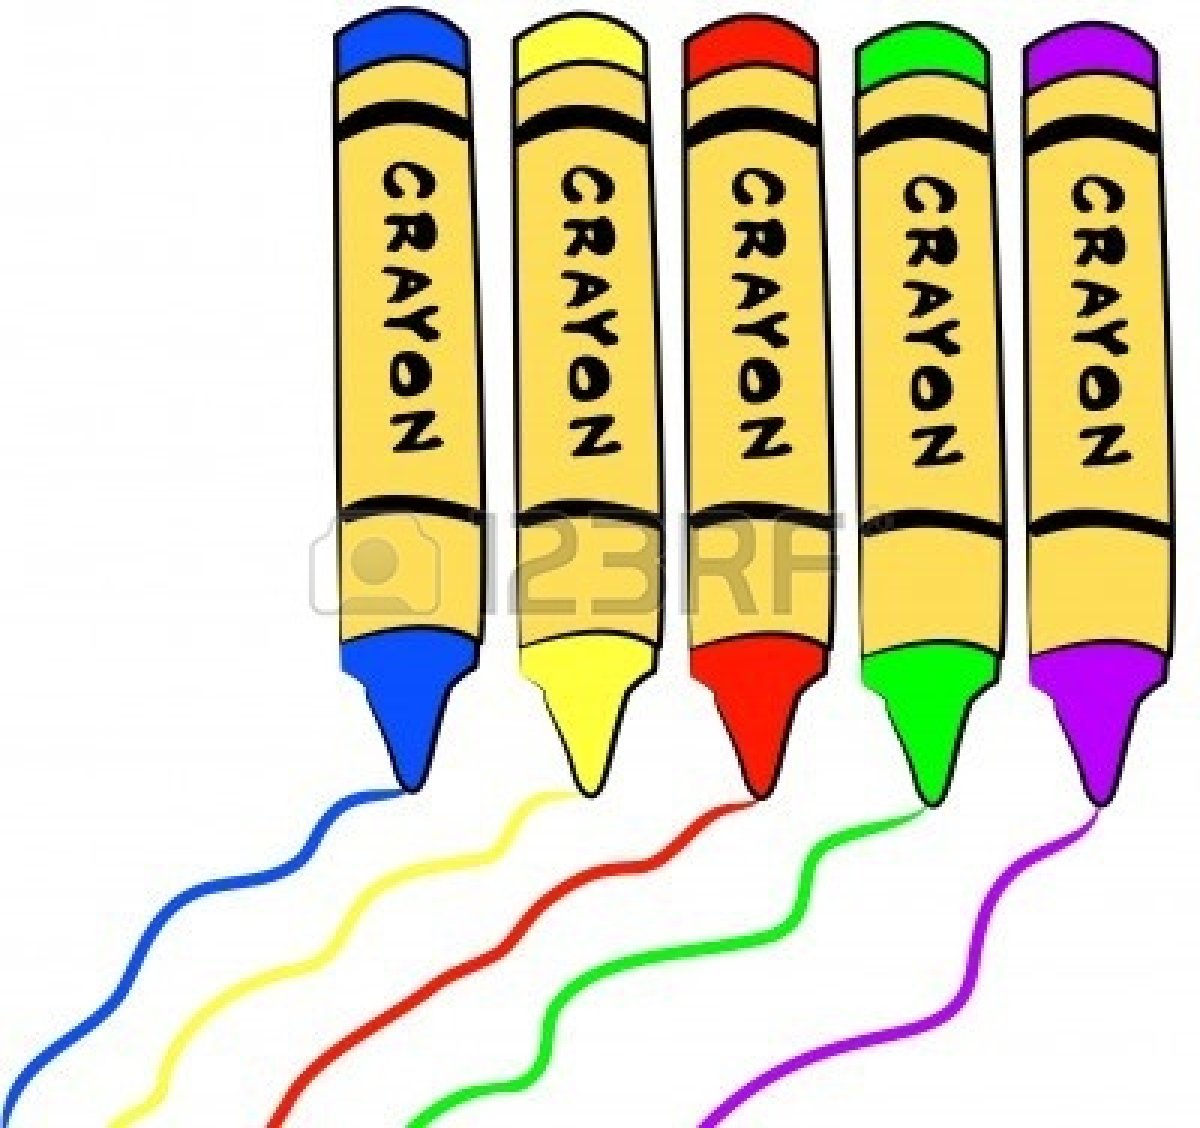 Totetude yellow crayon clip art at clker vector clip art